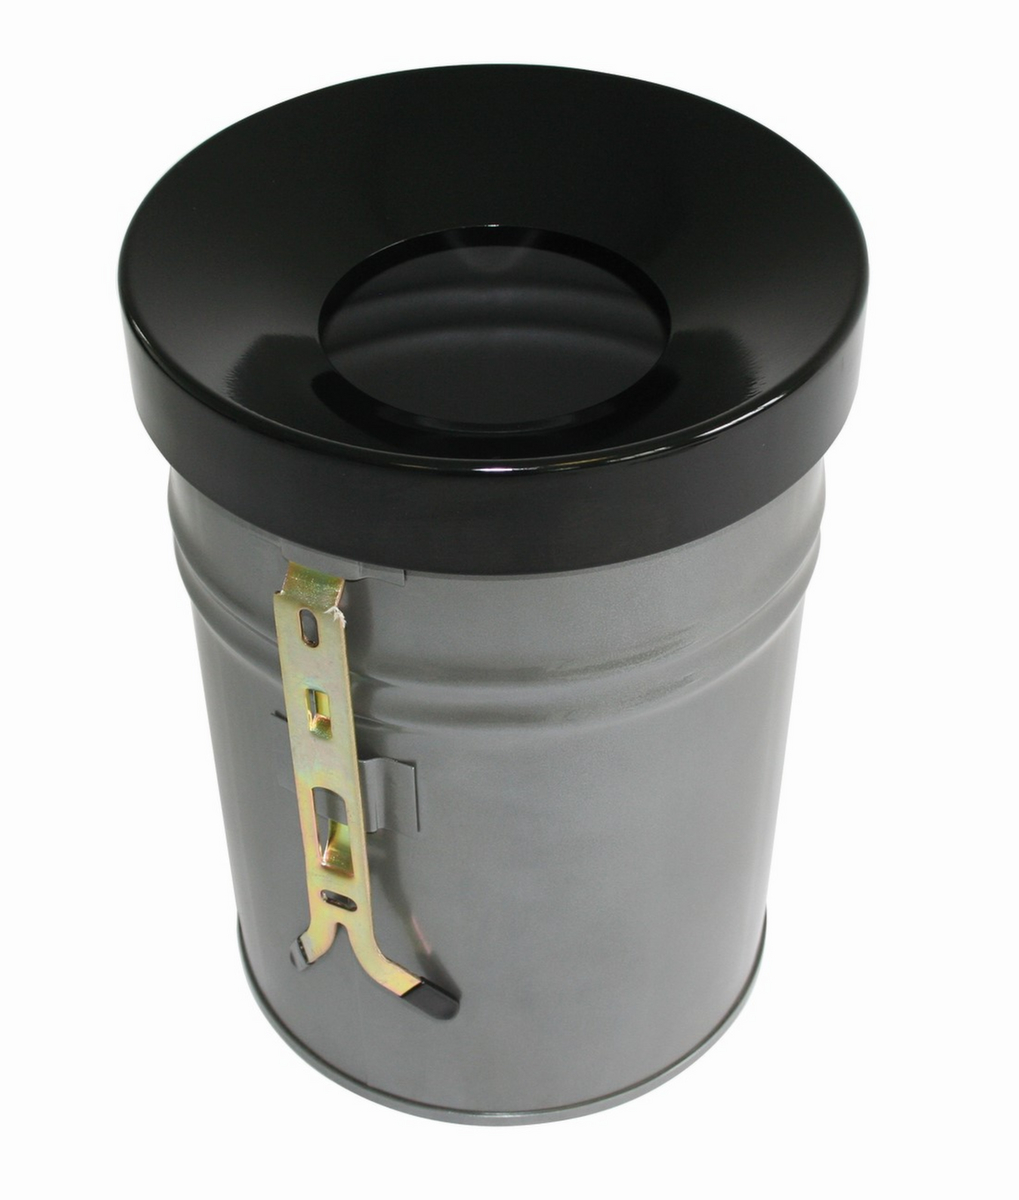 Selbstlöschender Abfallbehälter FIRE EX zur Wandbefestigung, 30 l, lichtgrau, Kopfteil schwarz Standard 1 ZOOM